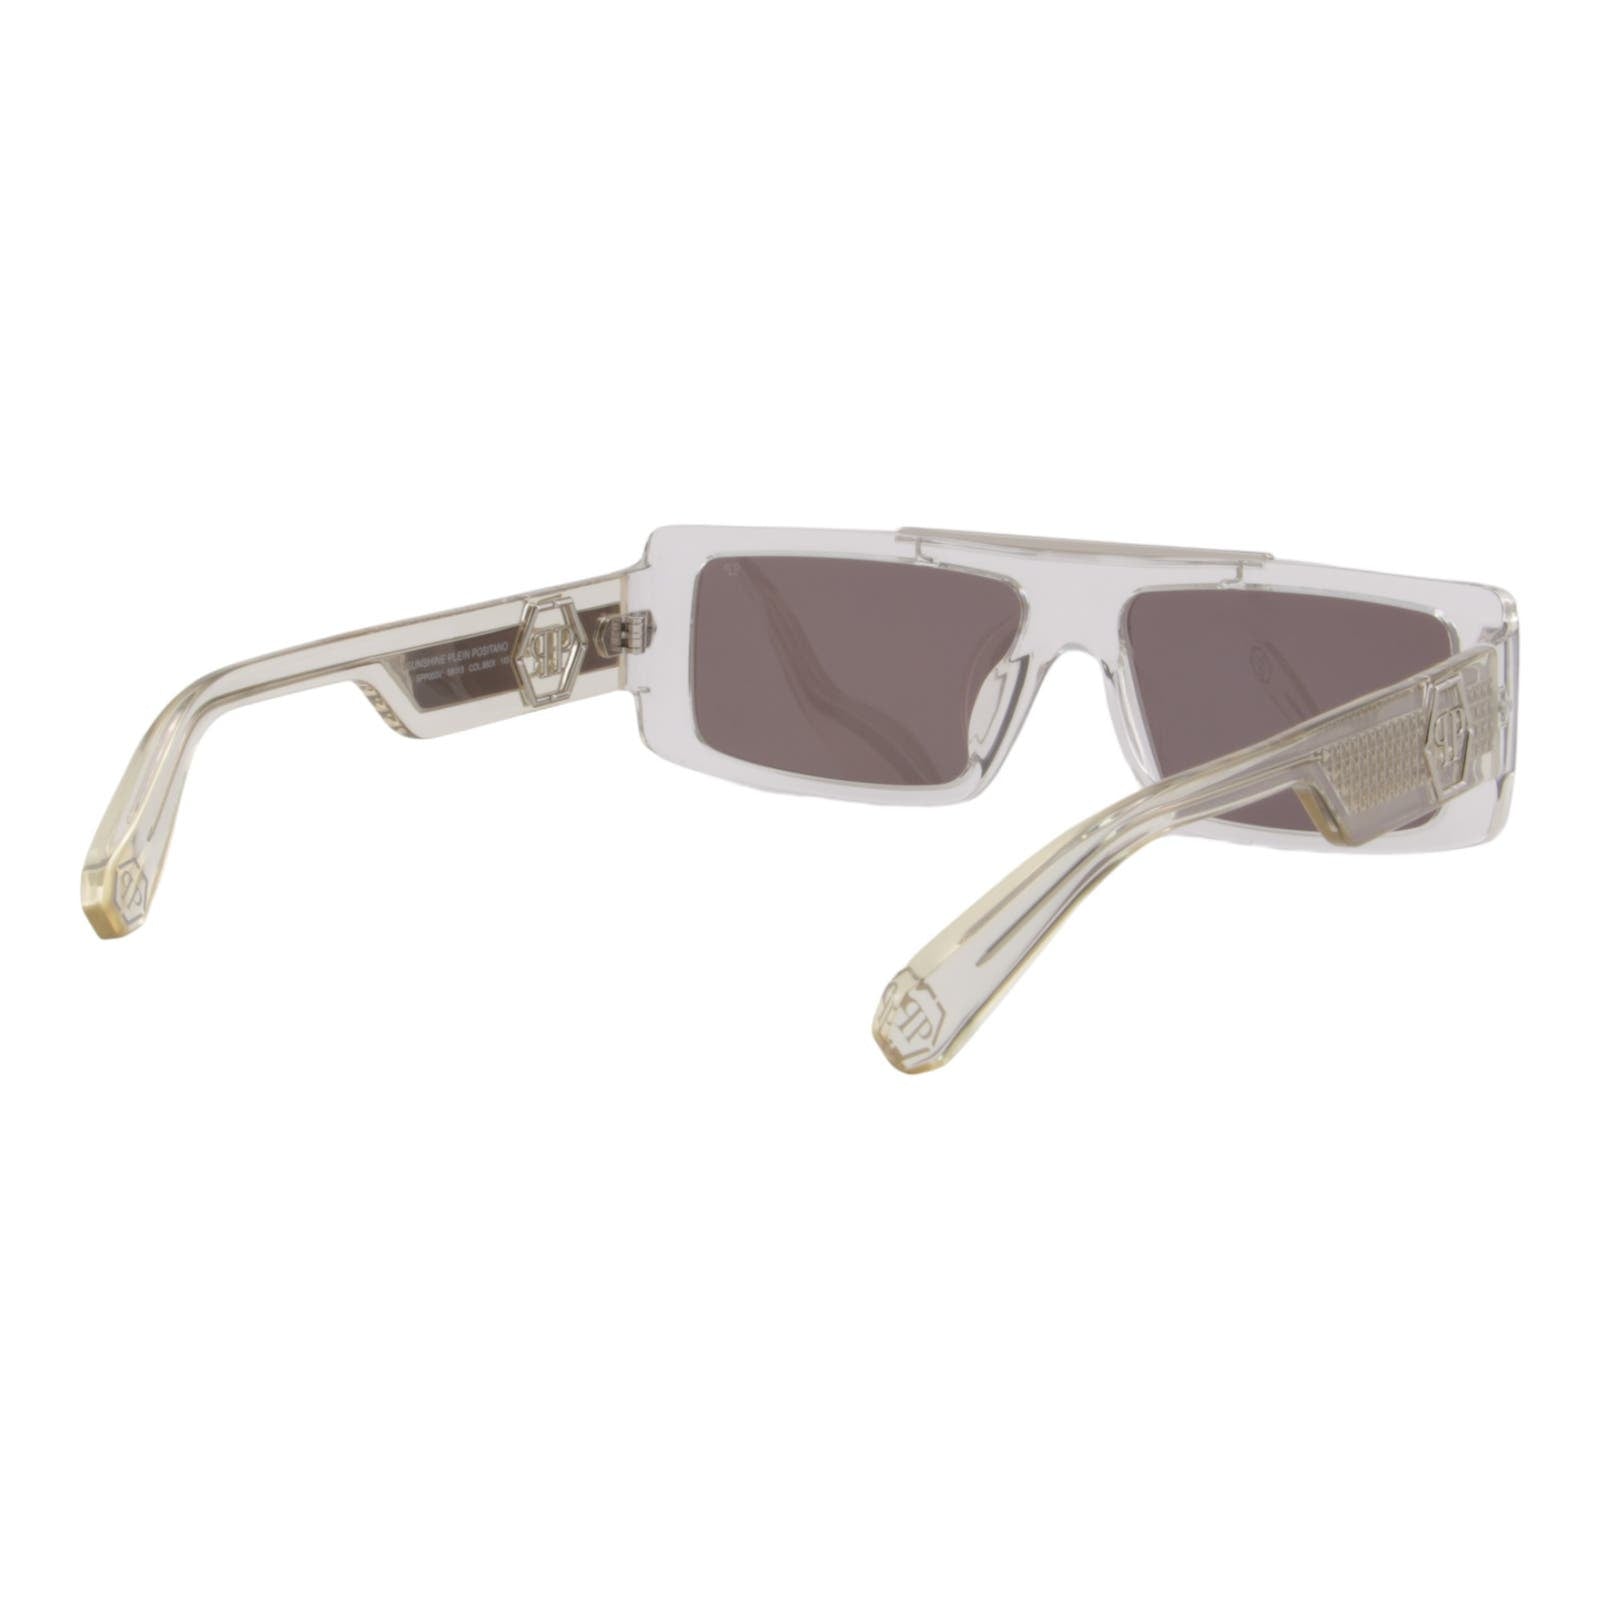 Designer Men Slim Rectangular Sunglasses SPP003V-880X Mirrored Lens